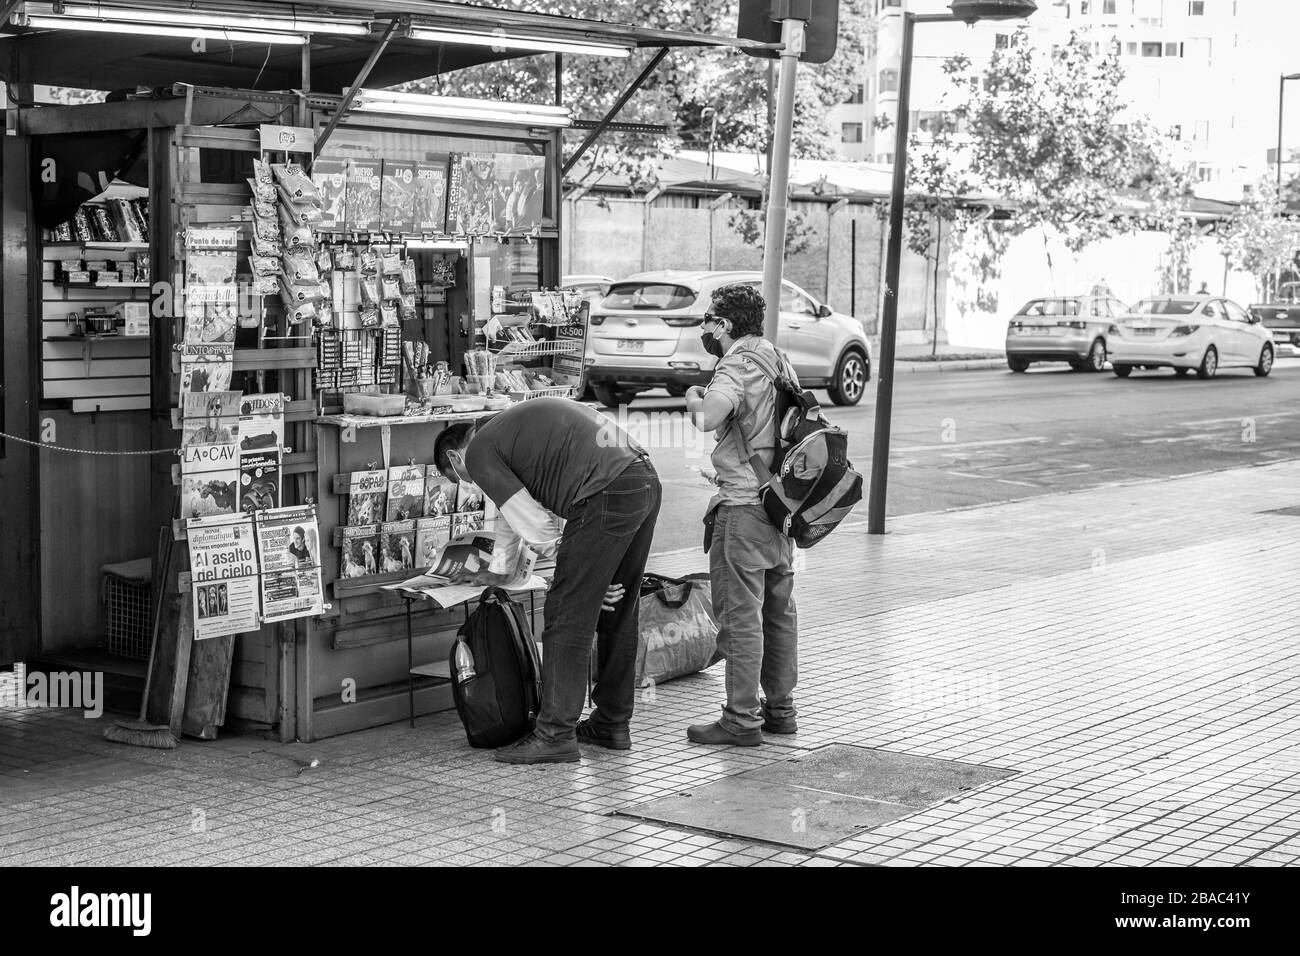 Les vrais acheteurs dans une petite entreprise des rues Providencia au cours des dernières heures avant le couvre-feu en raison de la maladie de coronavirus COVID-19 Banque D'Images